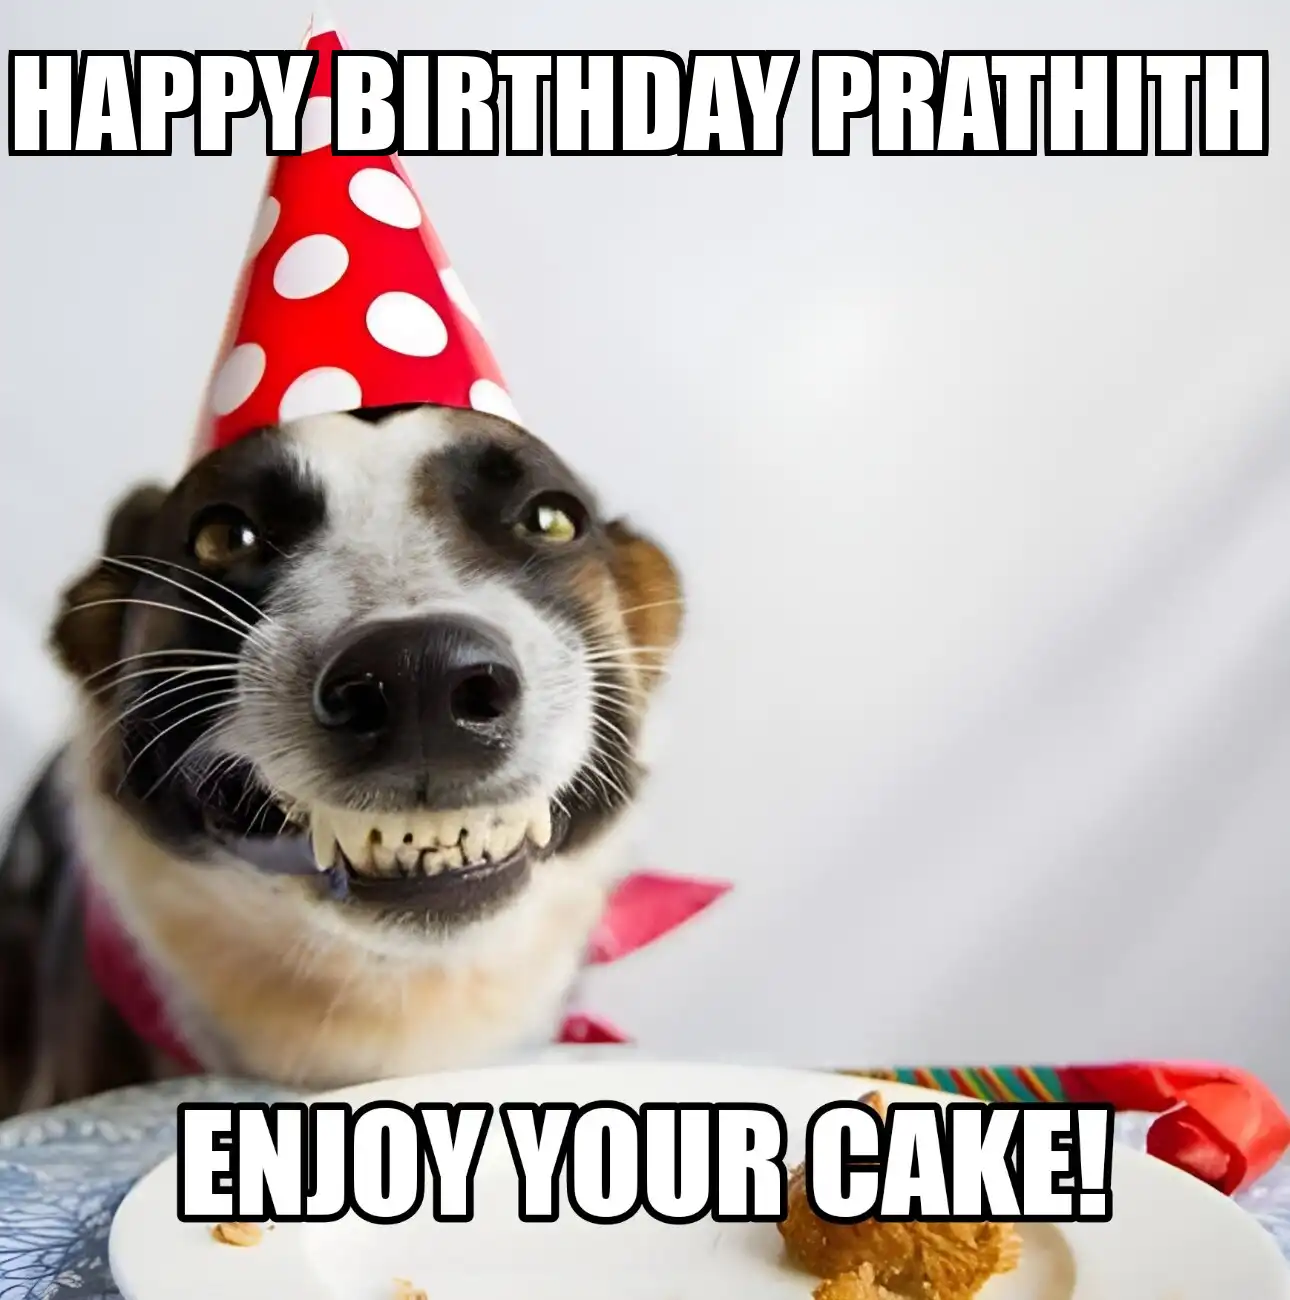 Happy Birthday Prathith Enjoy Your Cake Dog Meme